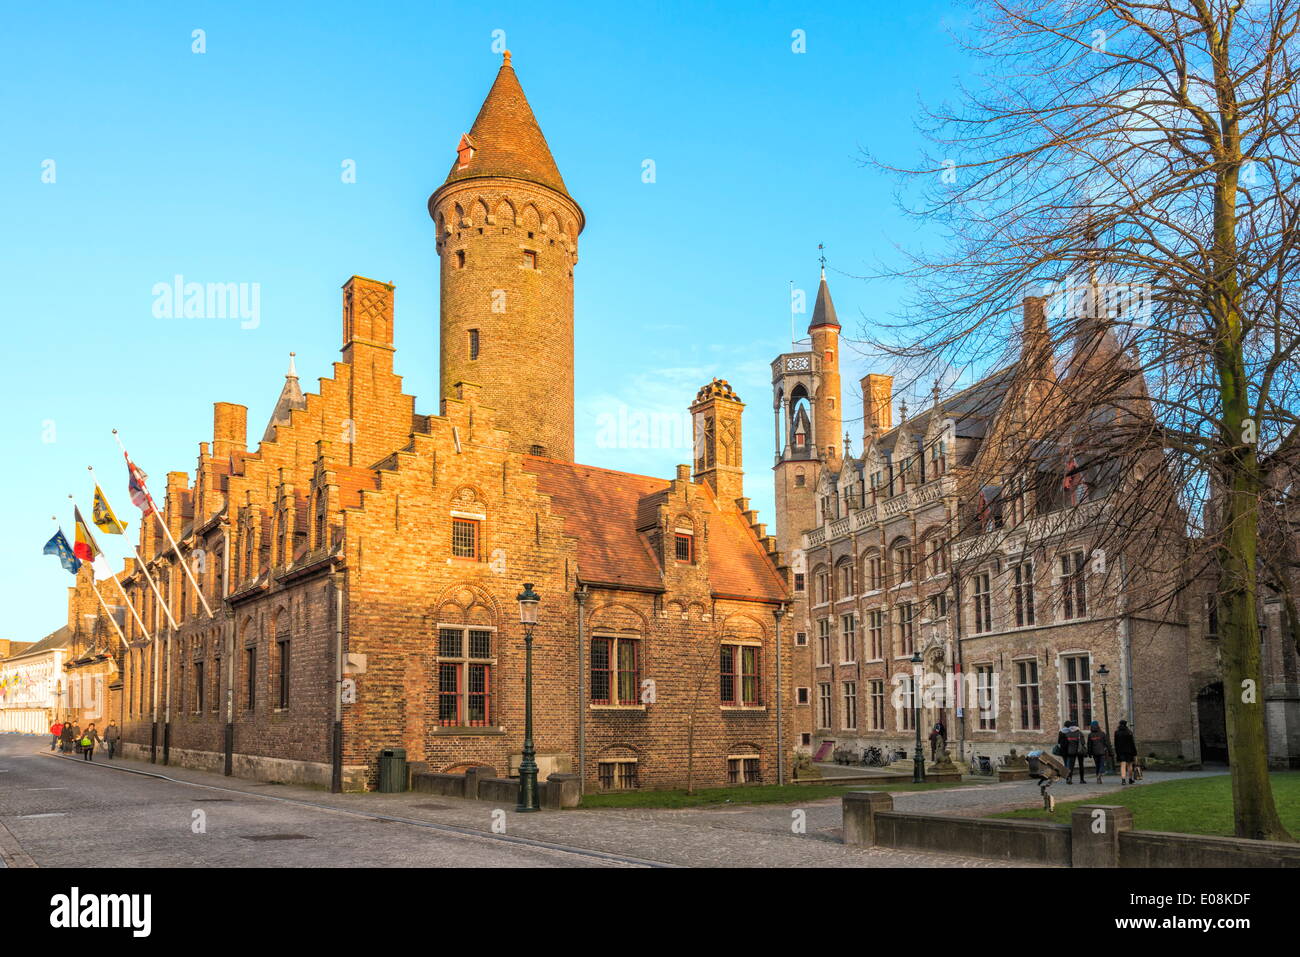 Gruuthuse Museum, historische Zentrum von Brügge, UNESCO World Heritage Site, Belgien Stockfoto